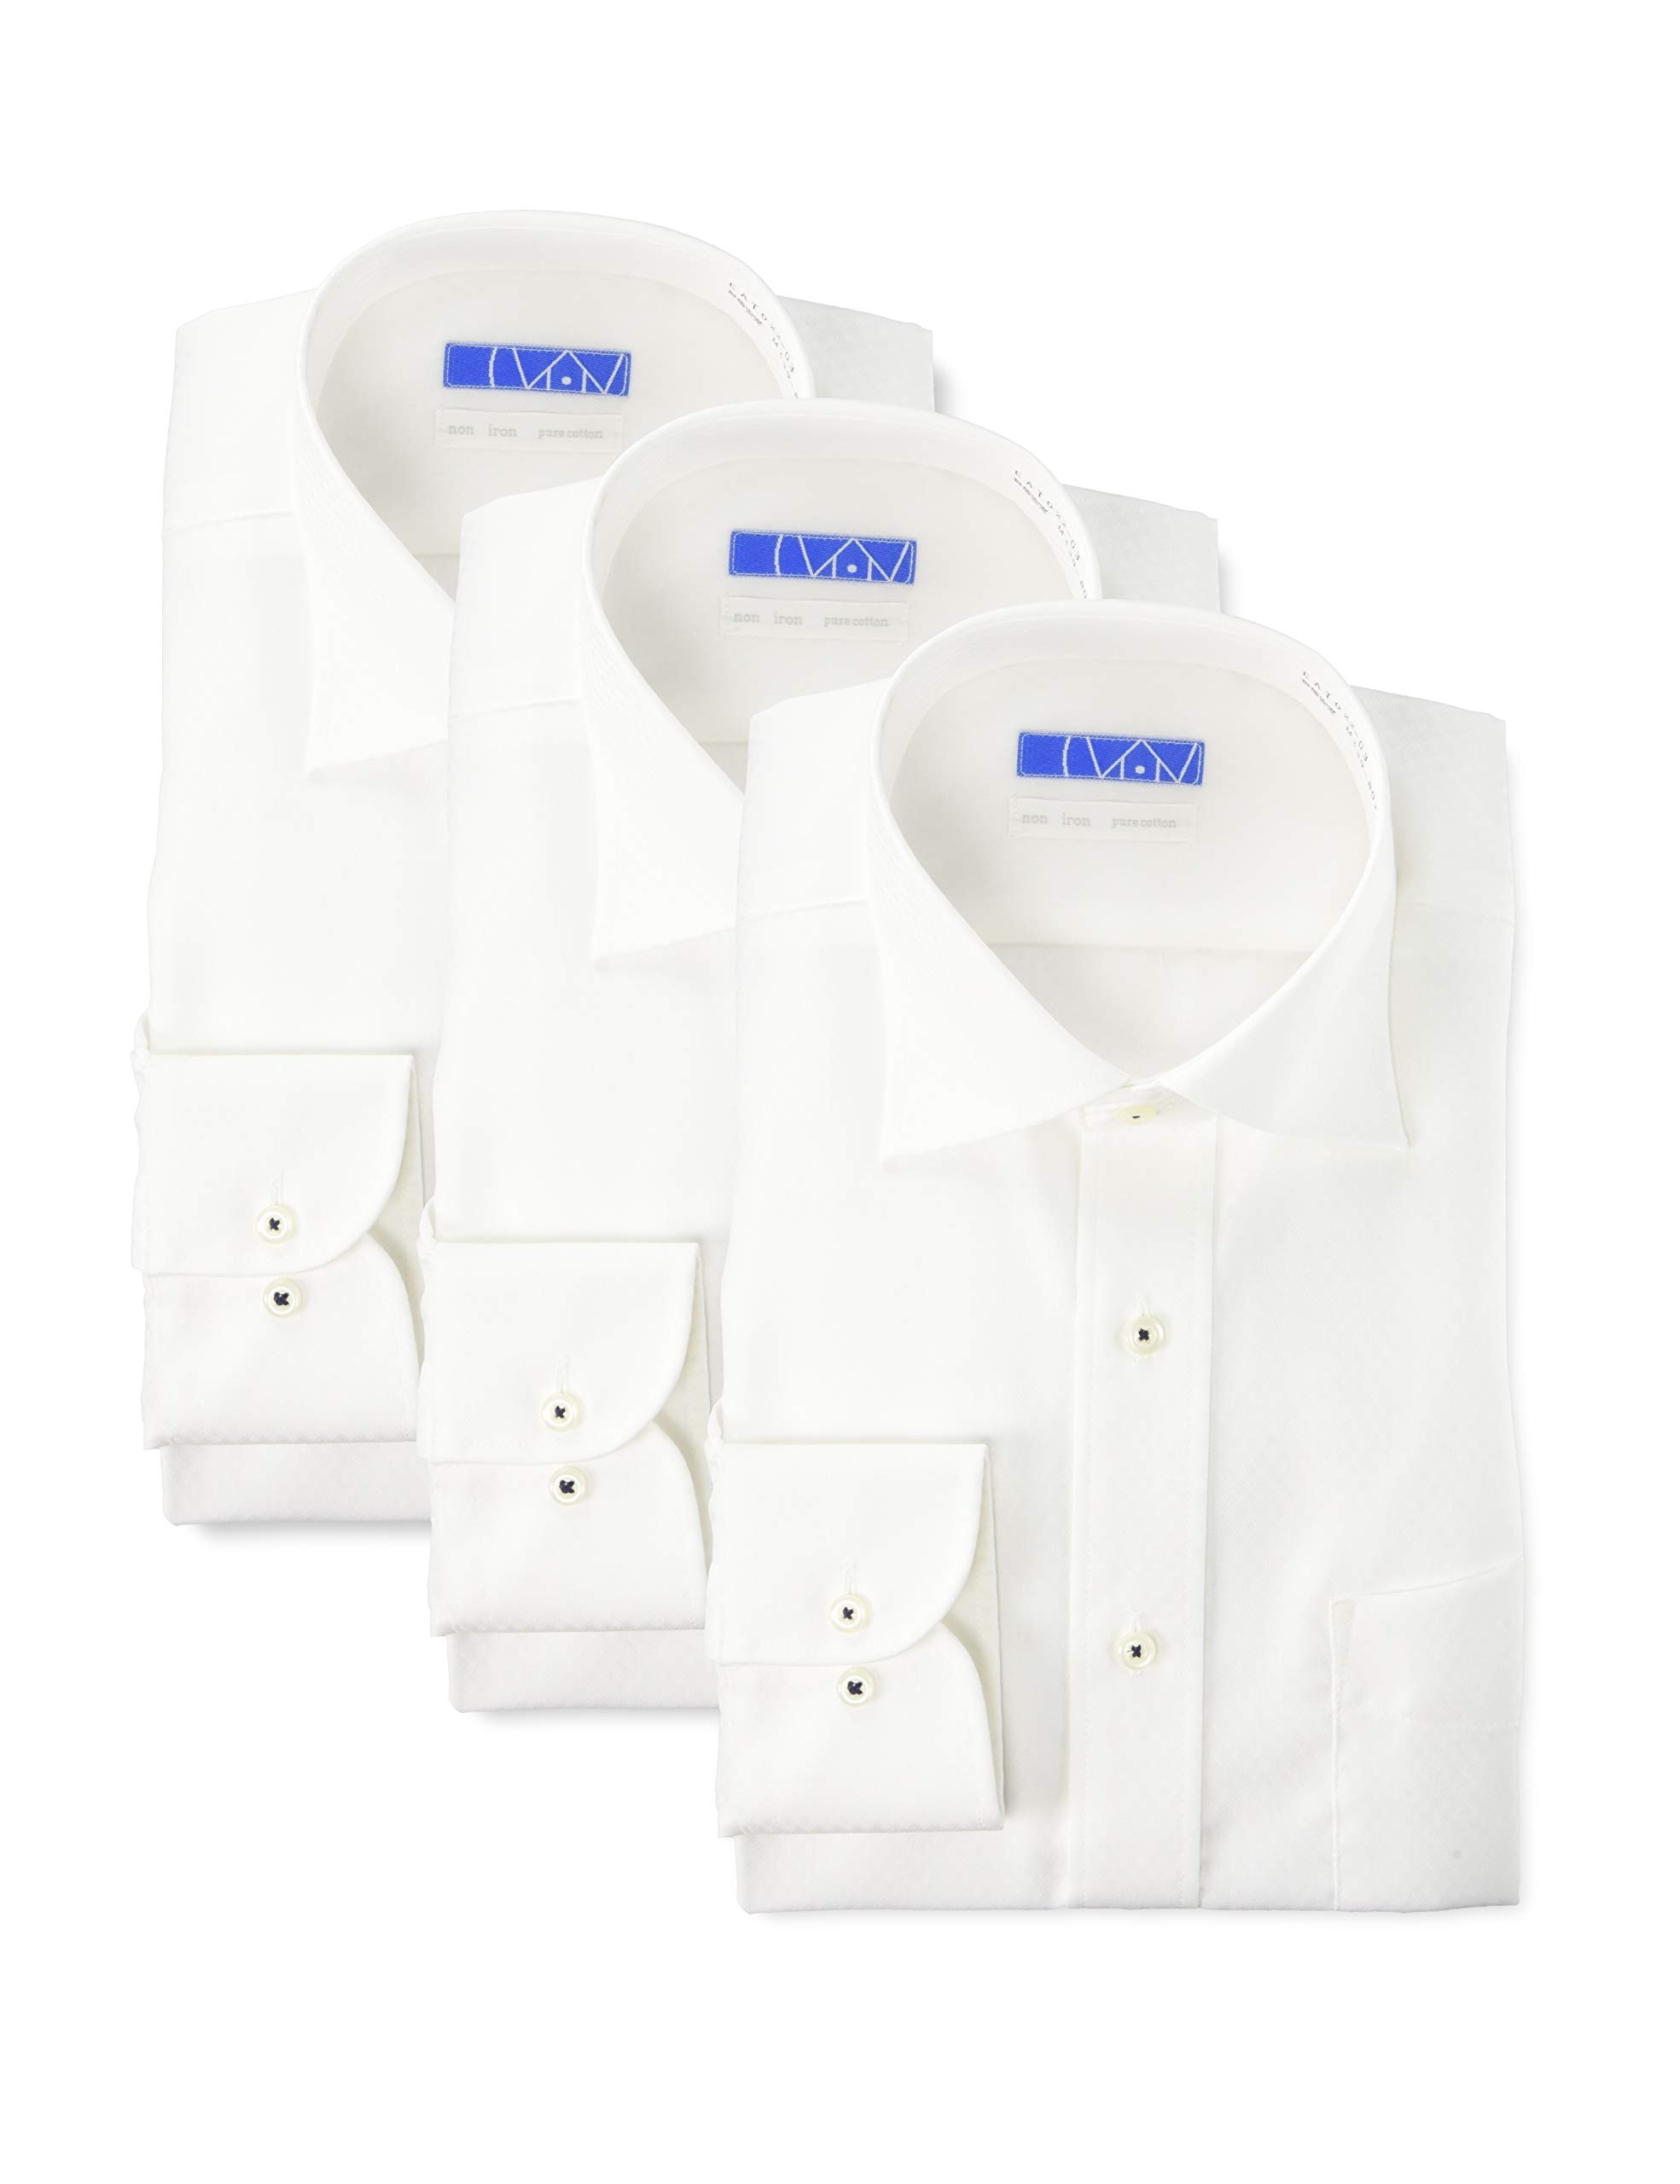 [ドレスコード101] ノーアイロン 長袖ワイシャツ 3枚セット 洗って干してそのまま着る 綿100% の優しい..